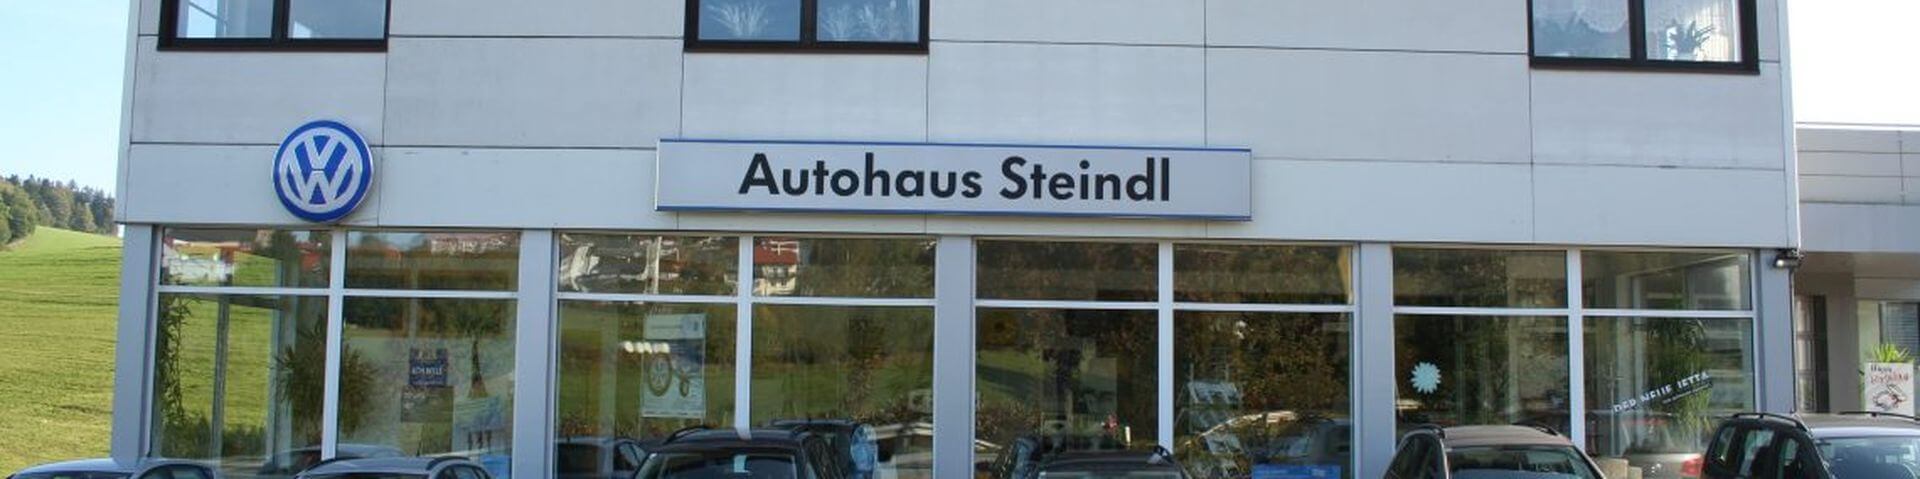 Titelbild von Lehrbetrieb Auto Steindl GesmbH Co. KG auf Lehrlingsportal.at